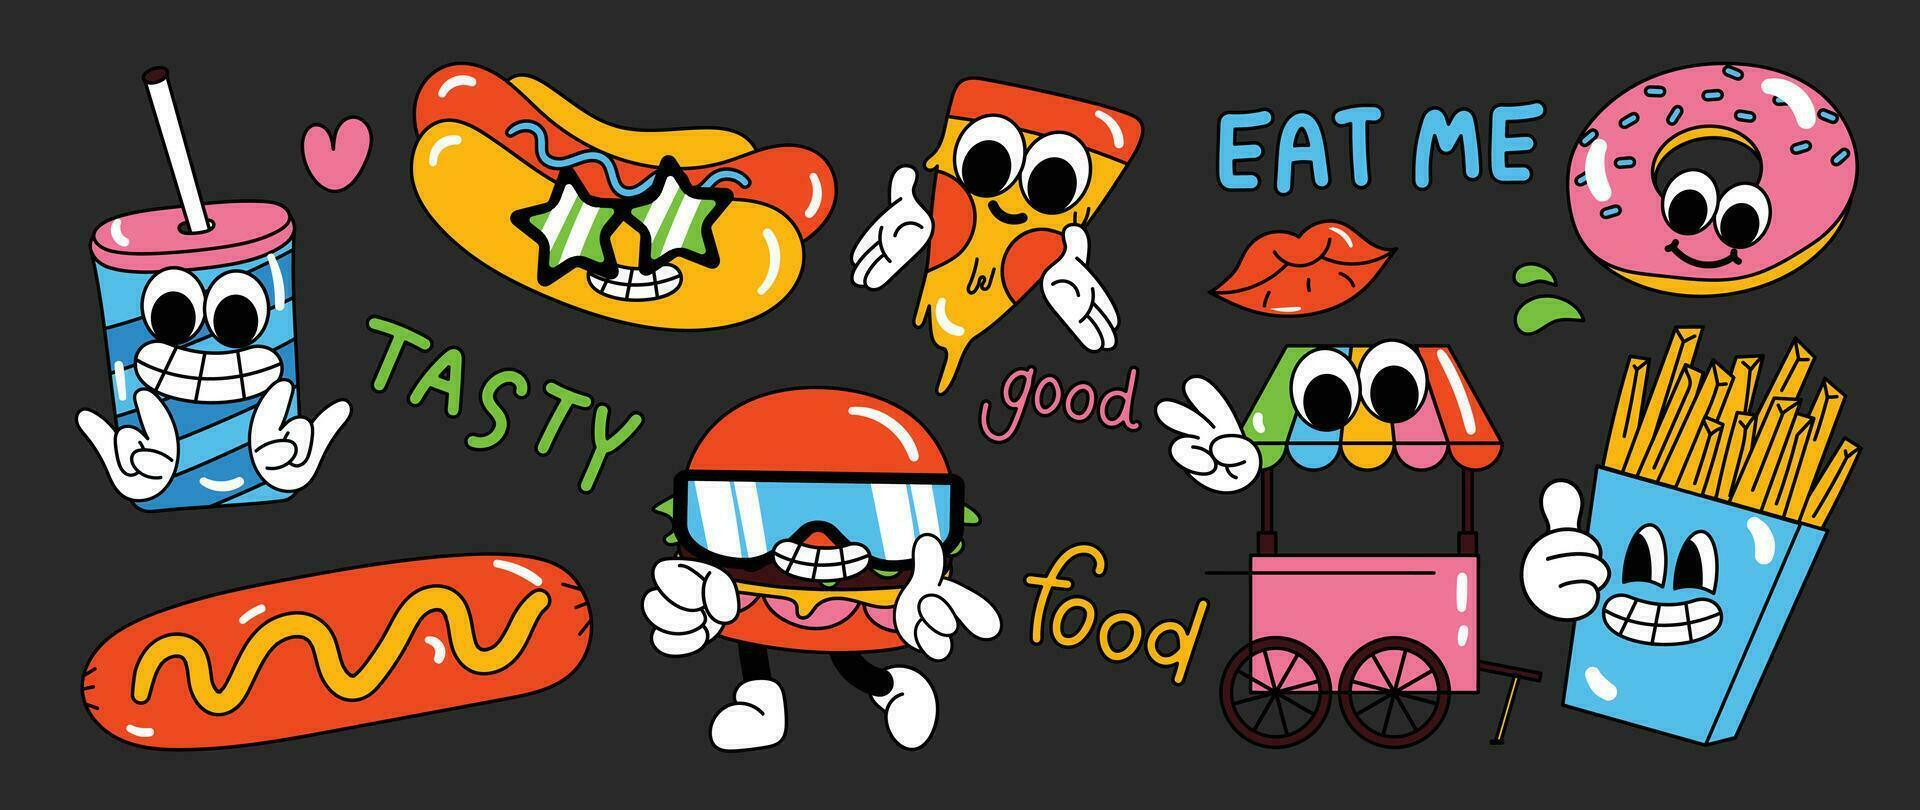 reeks van jaren 70 groovy element voedsel vrachtauto concept vector. verzameling van tekenfilm karakter, tekening glimlach gezicht, Hamburger, pizza, donut, worst. schattig retro groovy hippie ontwerp voor decoratief, sticker. vector